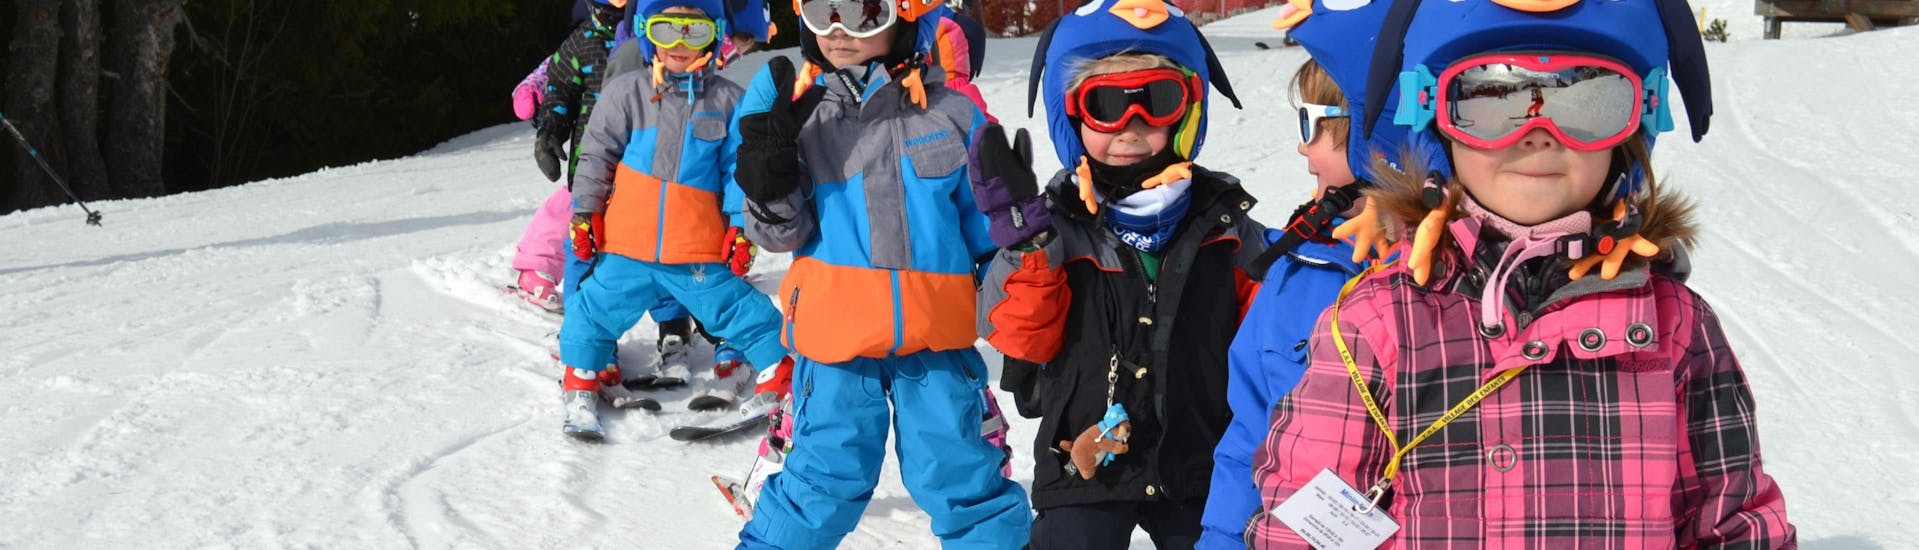 Cours de ski pour Enfants (5-17 ans) - Basse saison.